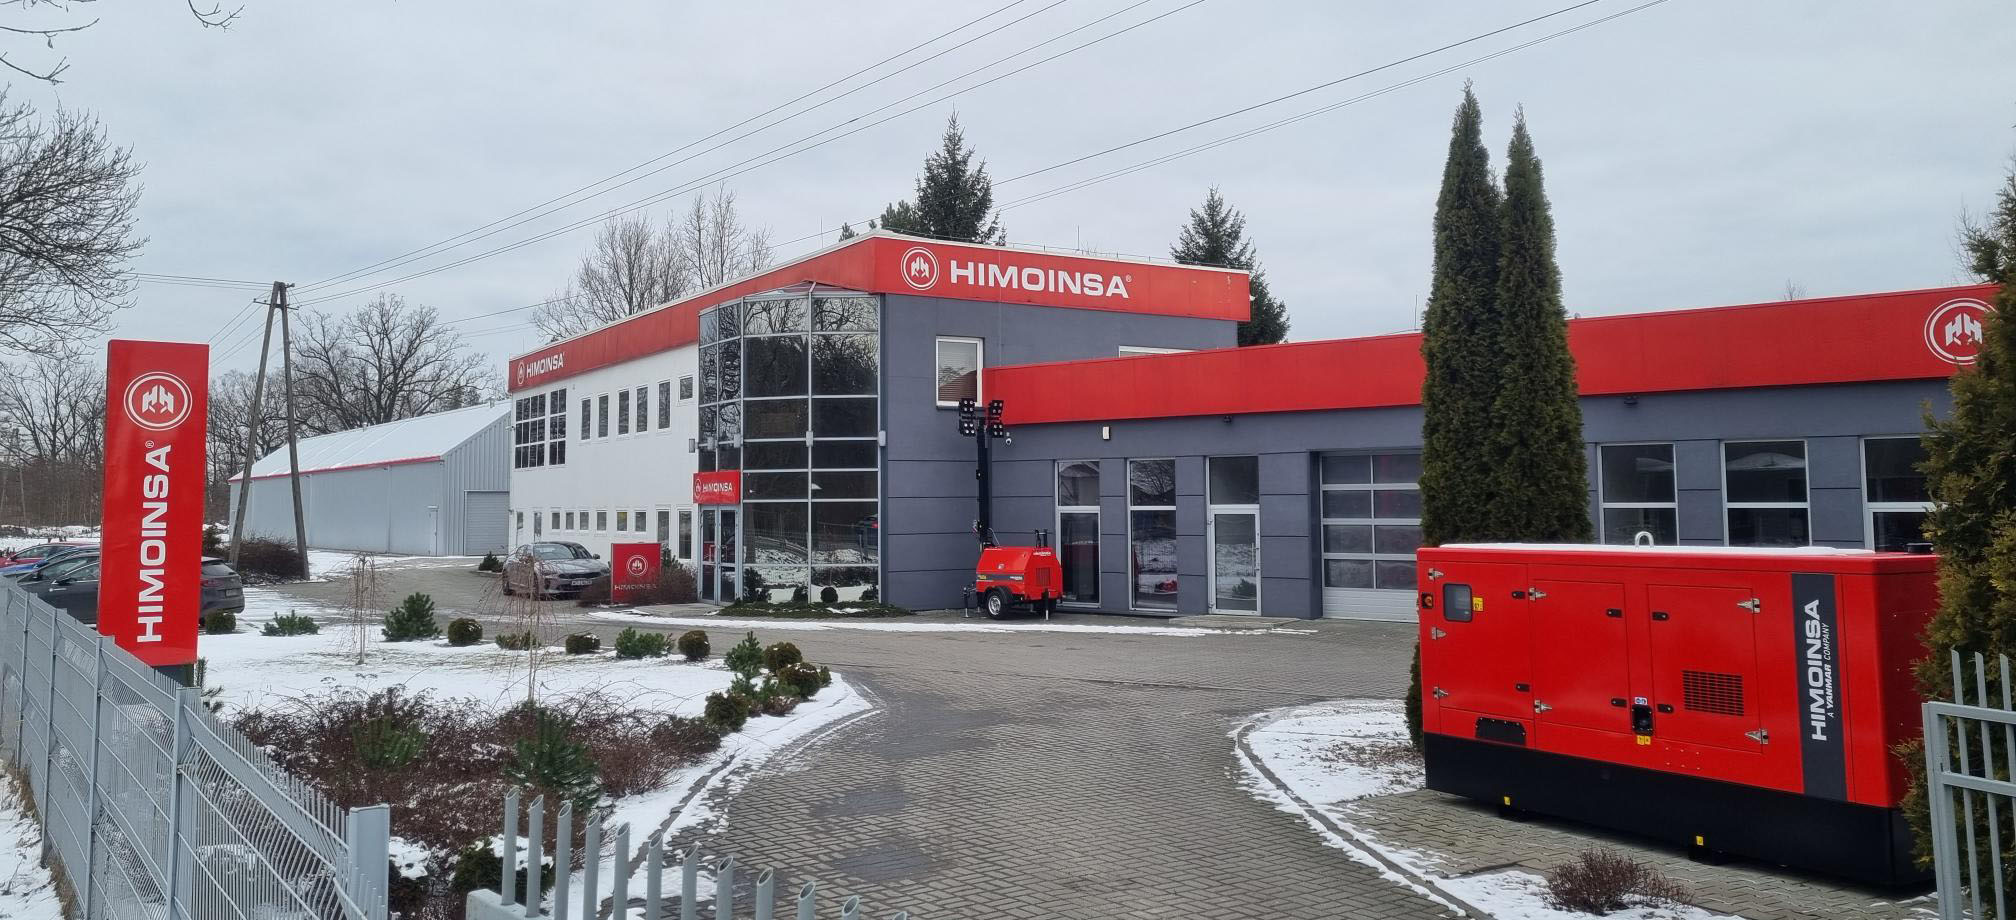 HIMOINSA Polonia amplía sus instalaciones y aumenta su capacidad de almacenamiento y distribución de equipos